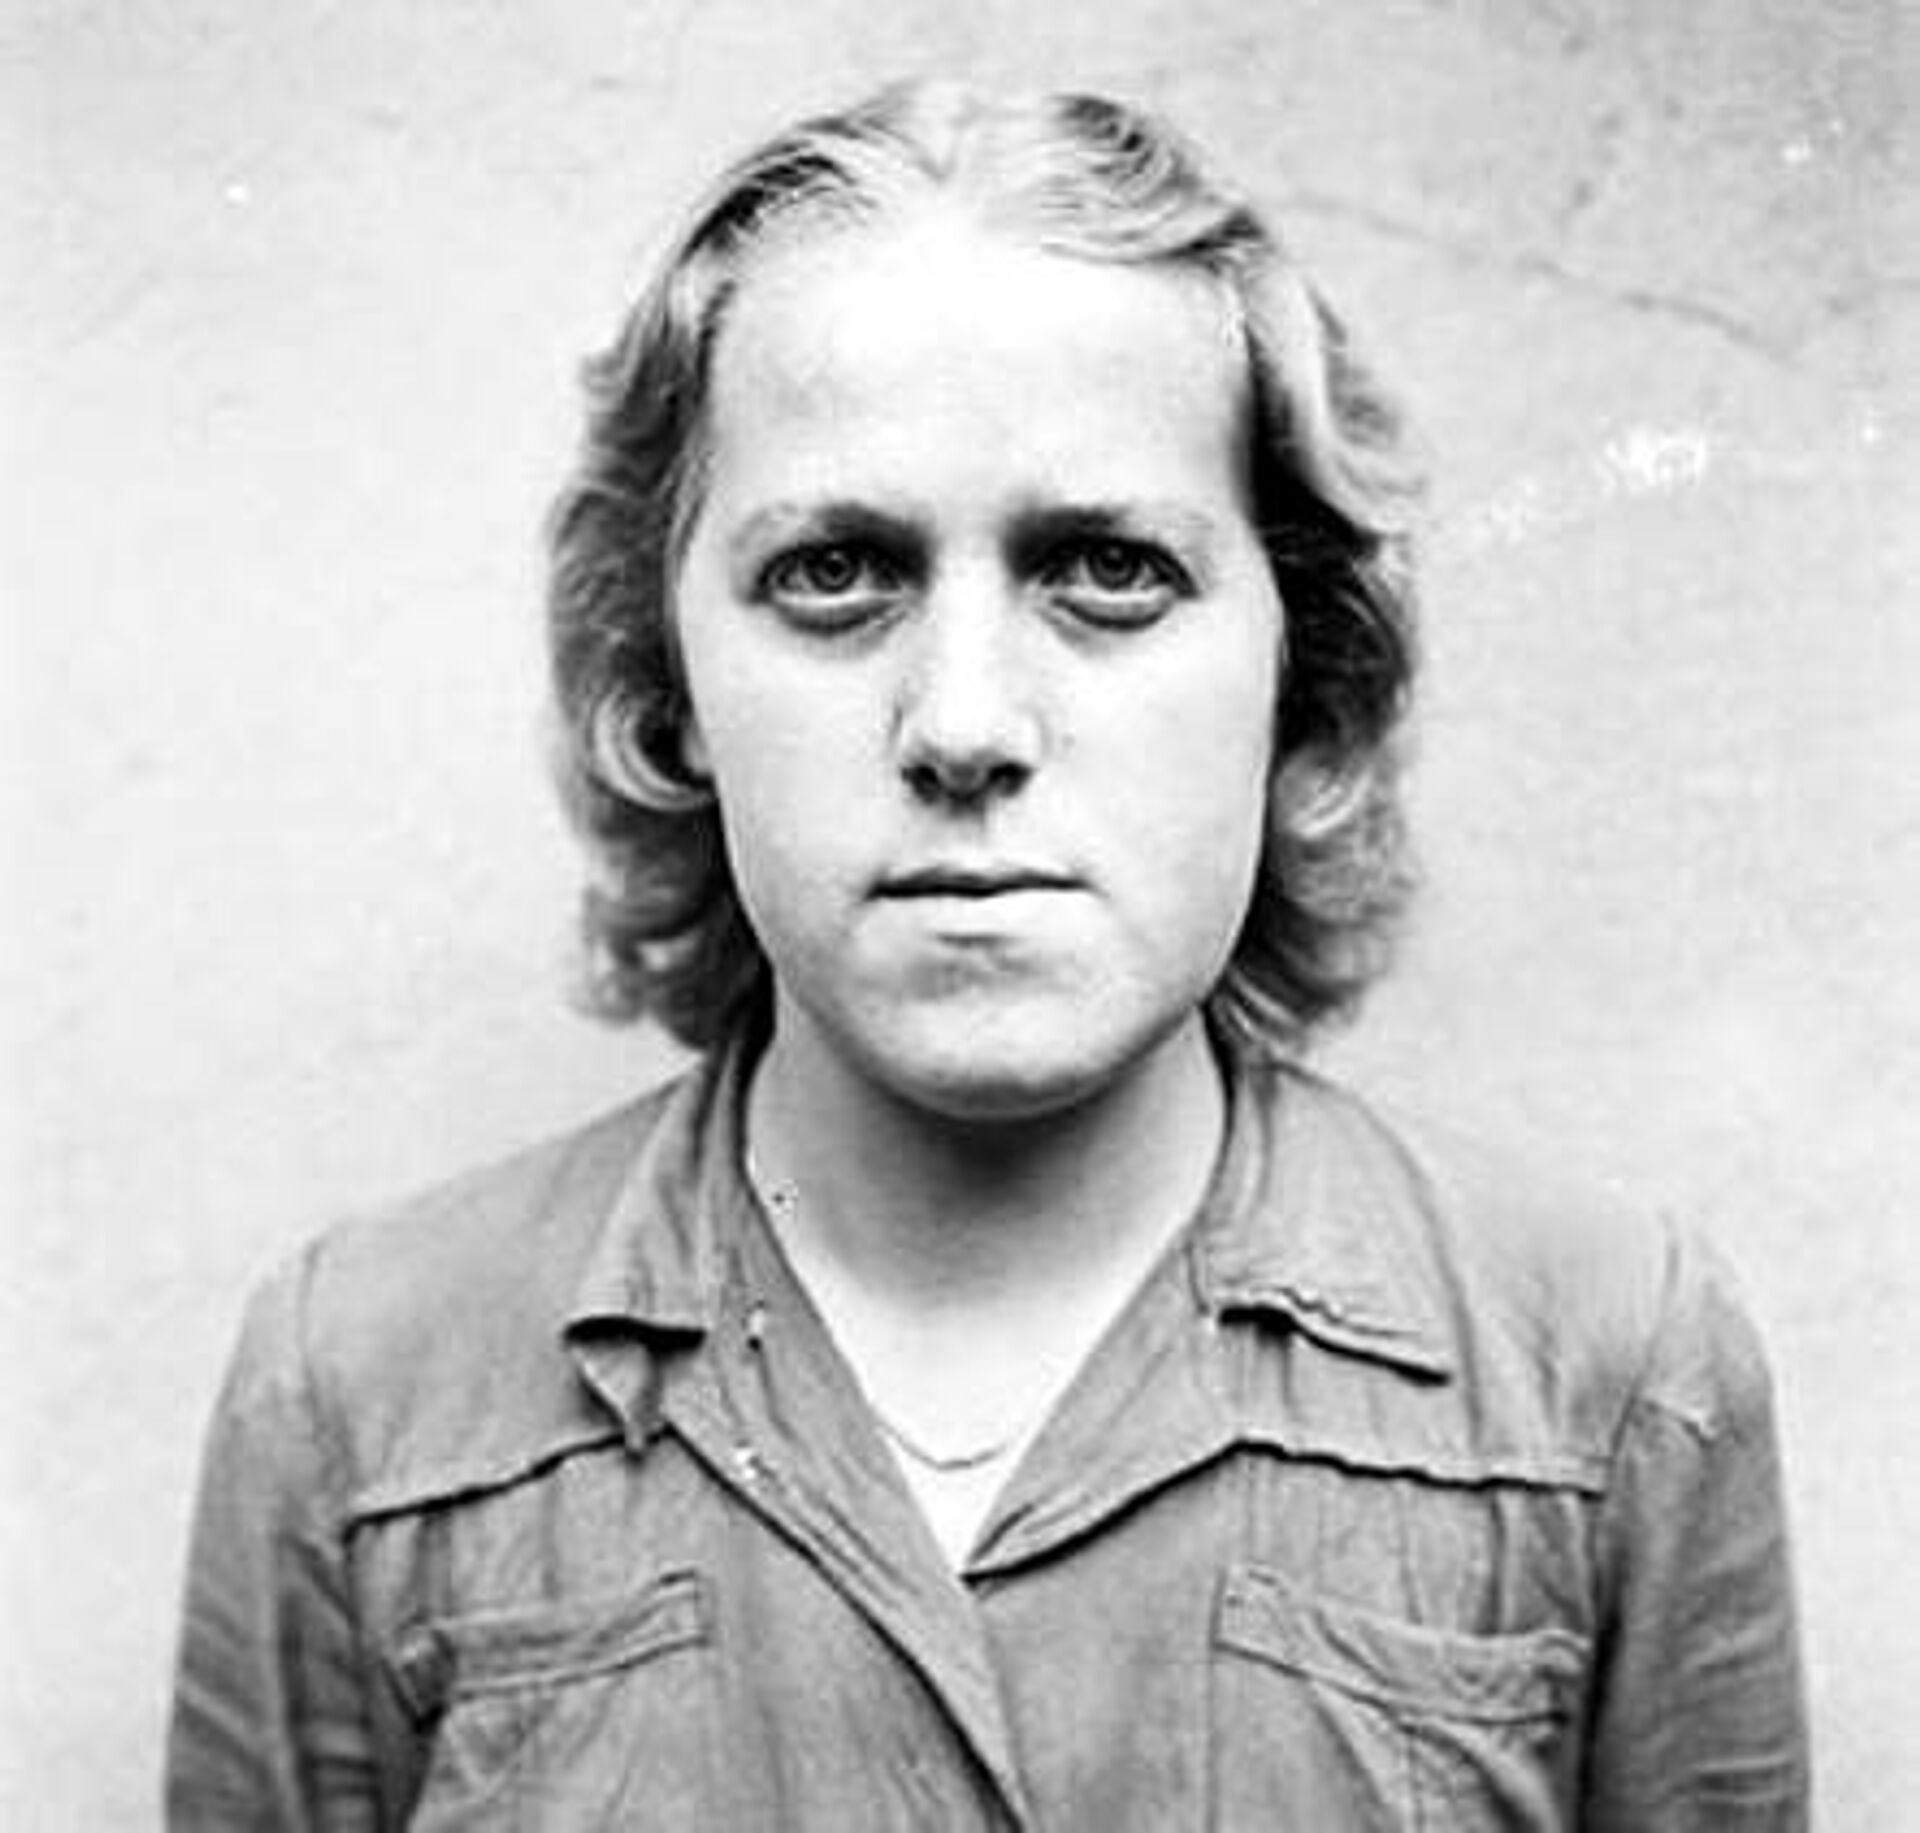 Како су обичне жене постале мучитељке: Ко су биле чуварке у нацистичким логорима? /фото/ - Sputnik Србија, 1920, 29.03.2021